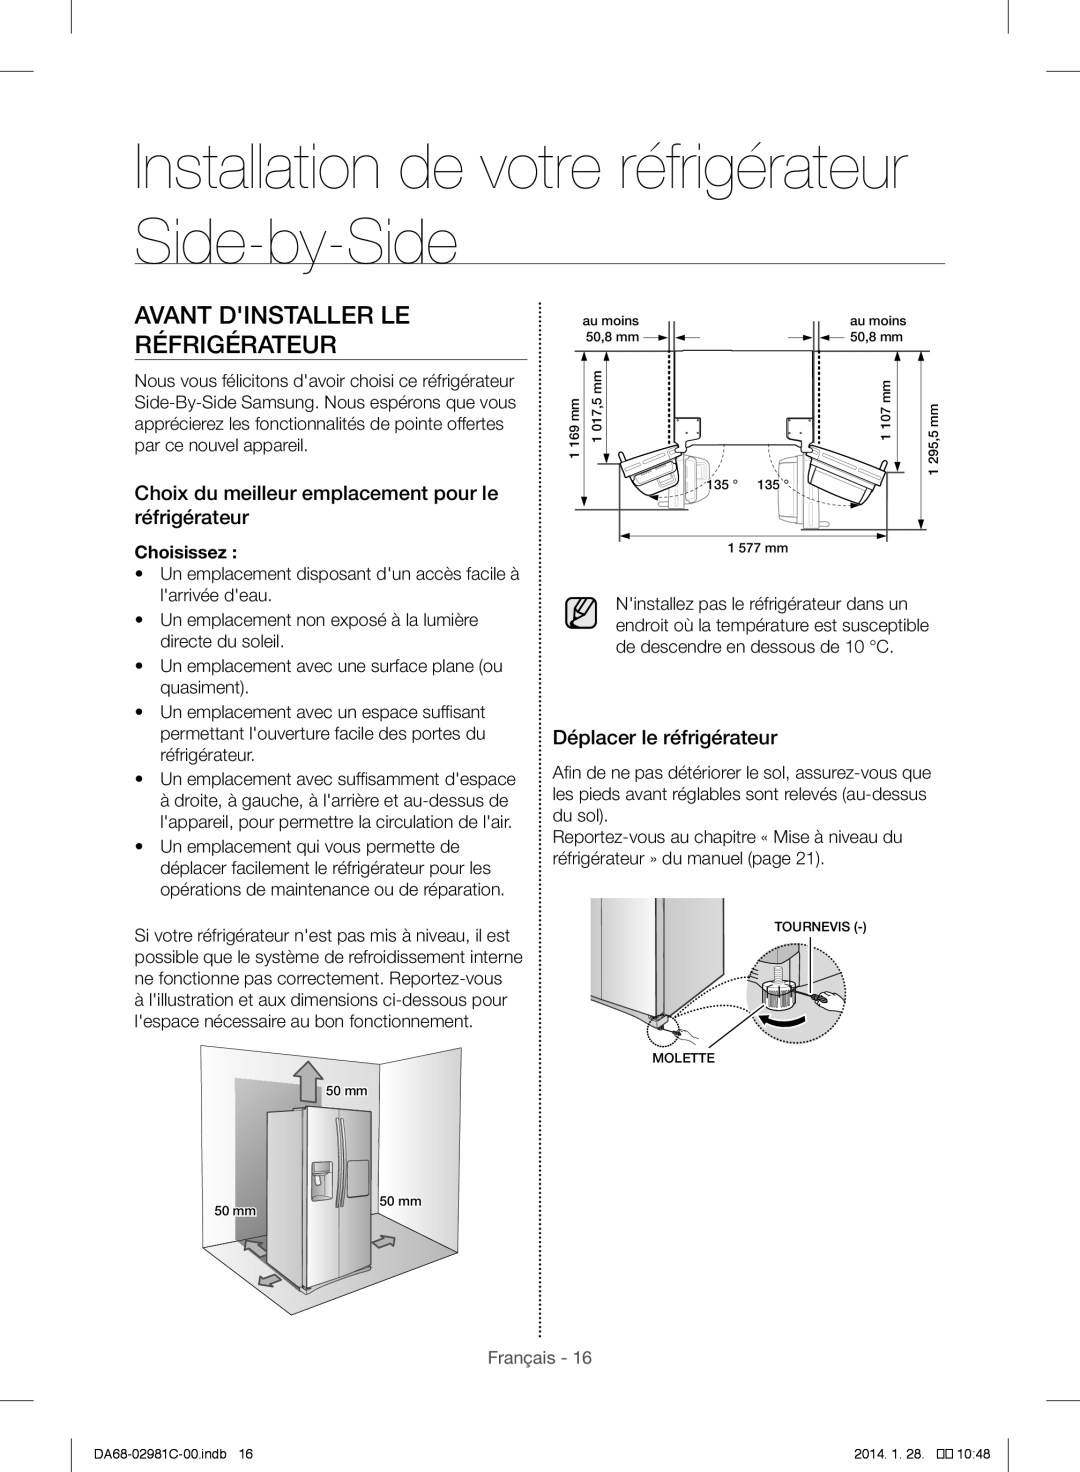 Samsung RS25H5223SL/ZA Installation de votre réfrigérateur Side-by-Side, Avant Dinstaller LE Réfrigérateur, Choisissez 